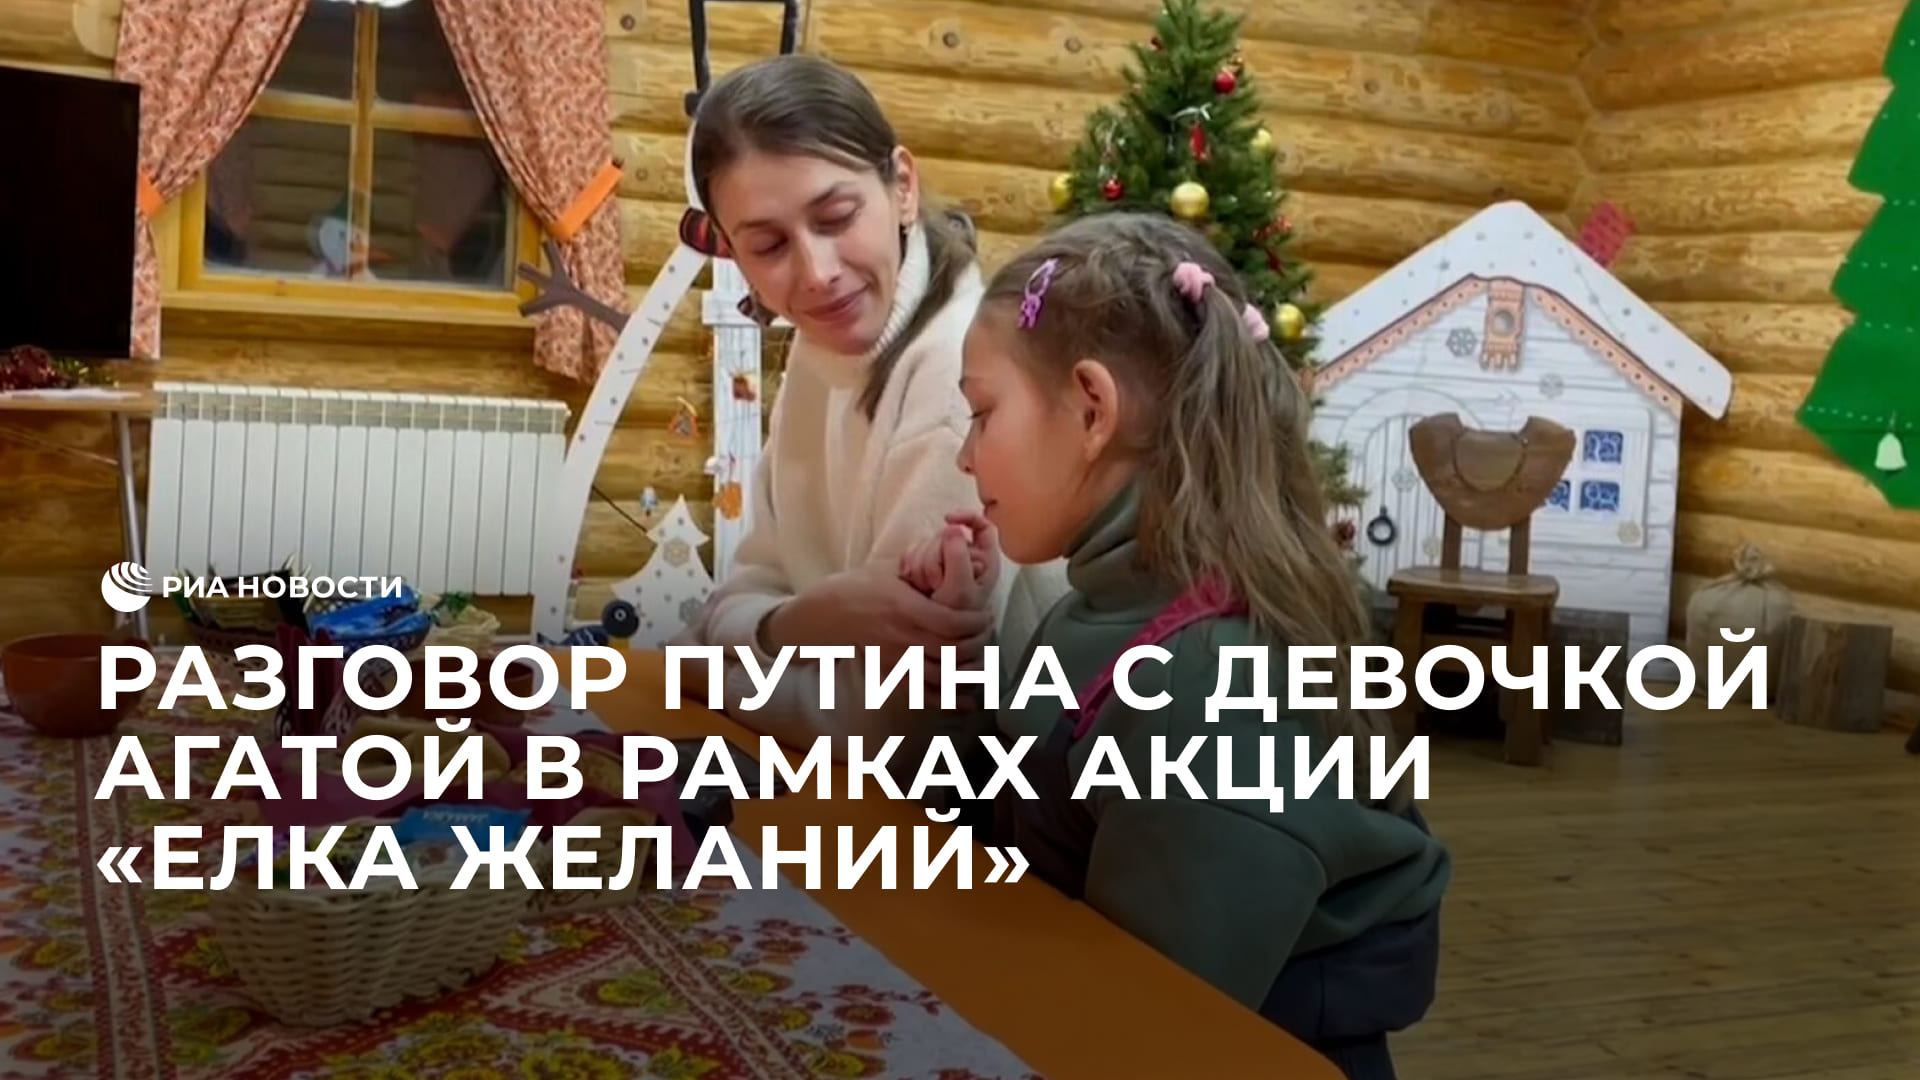 Разговор Путина с девочкой Агатой в рамках акции "Елка желаний"